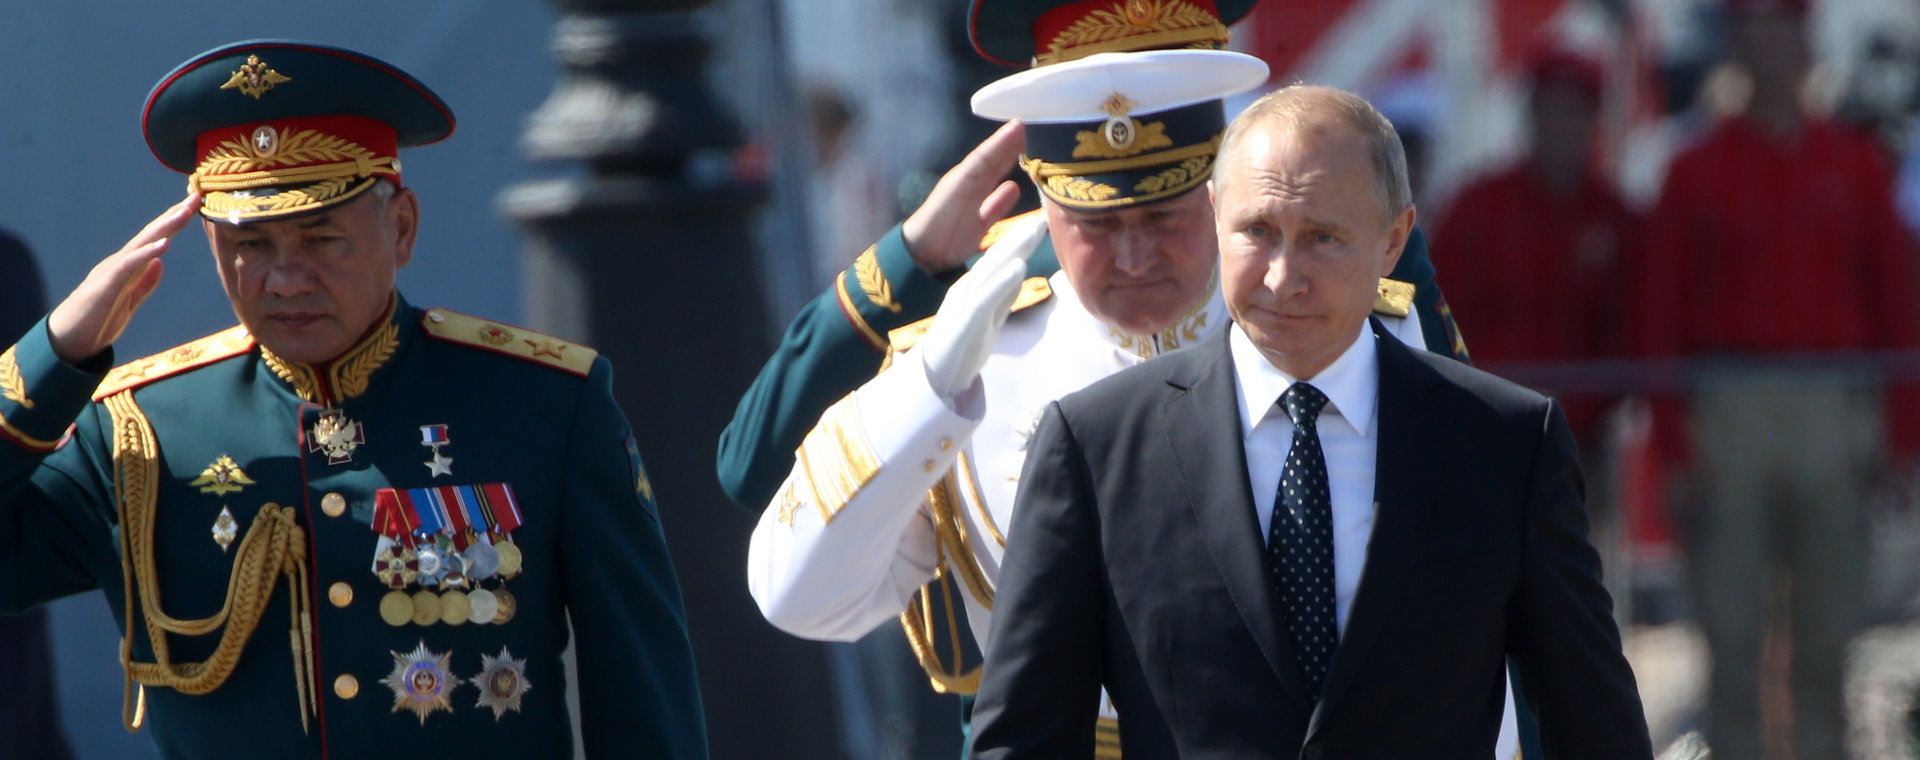 Prezydent Władimir Putin z dowódcami wojskowymi na paradzie z okazji Dnia Marynarki Wojennej w Petersburgu, lipiec 2018 r.